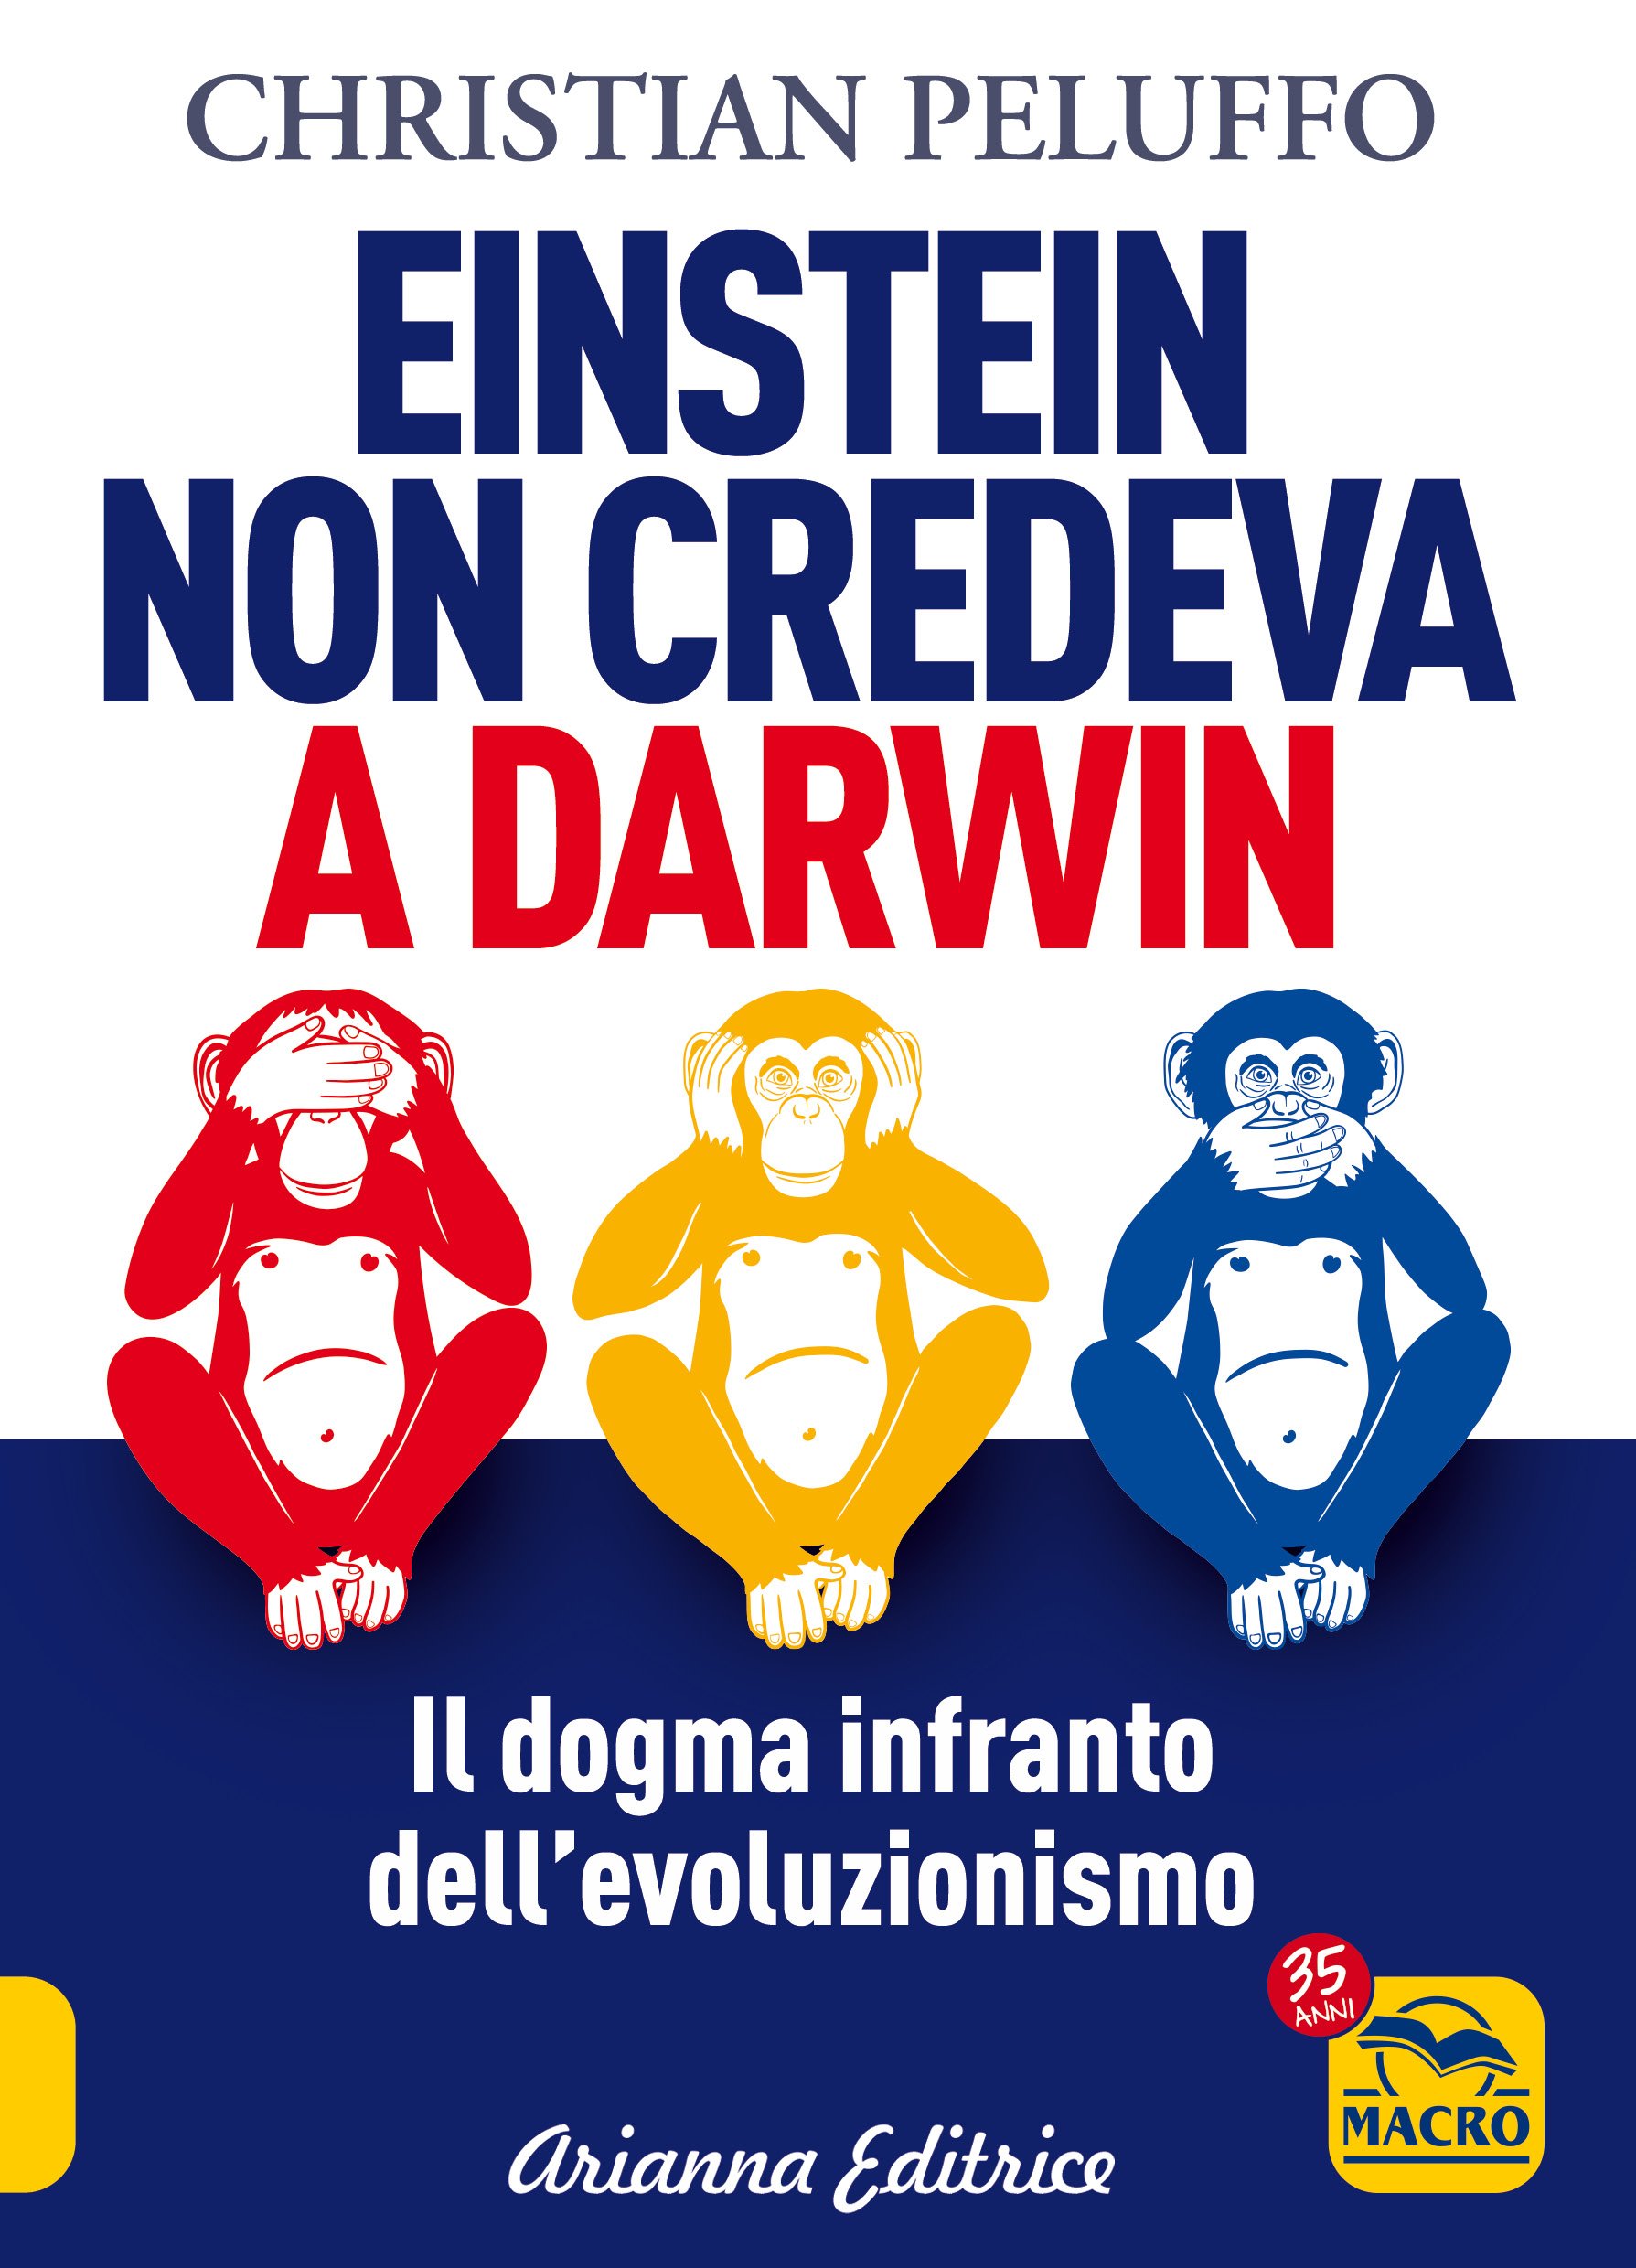 Eintein no credeva a Darwin